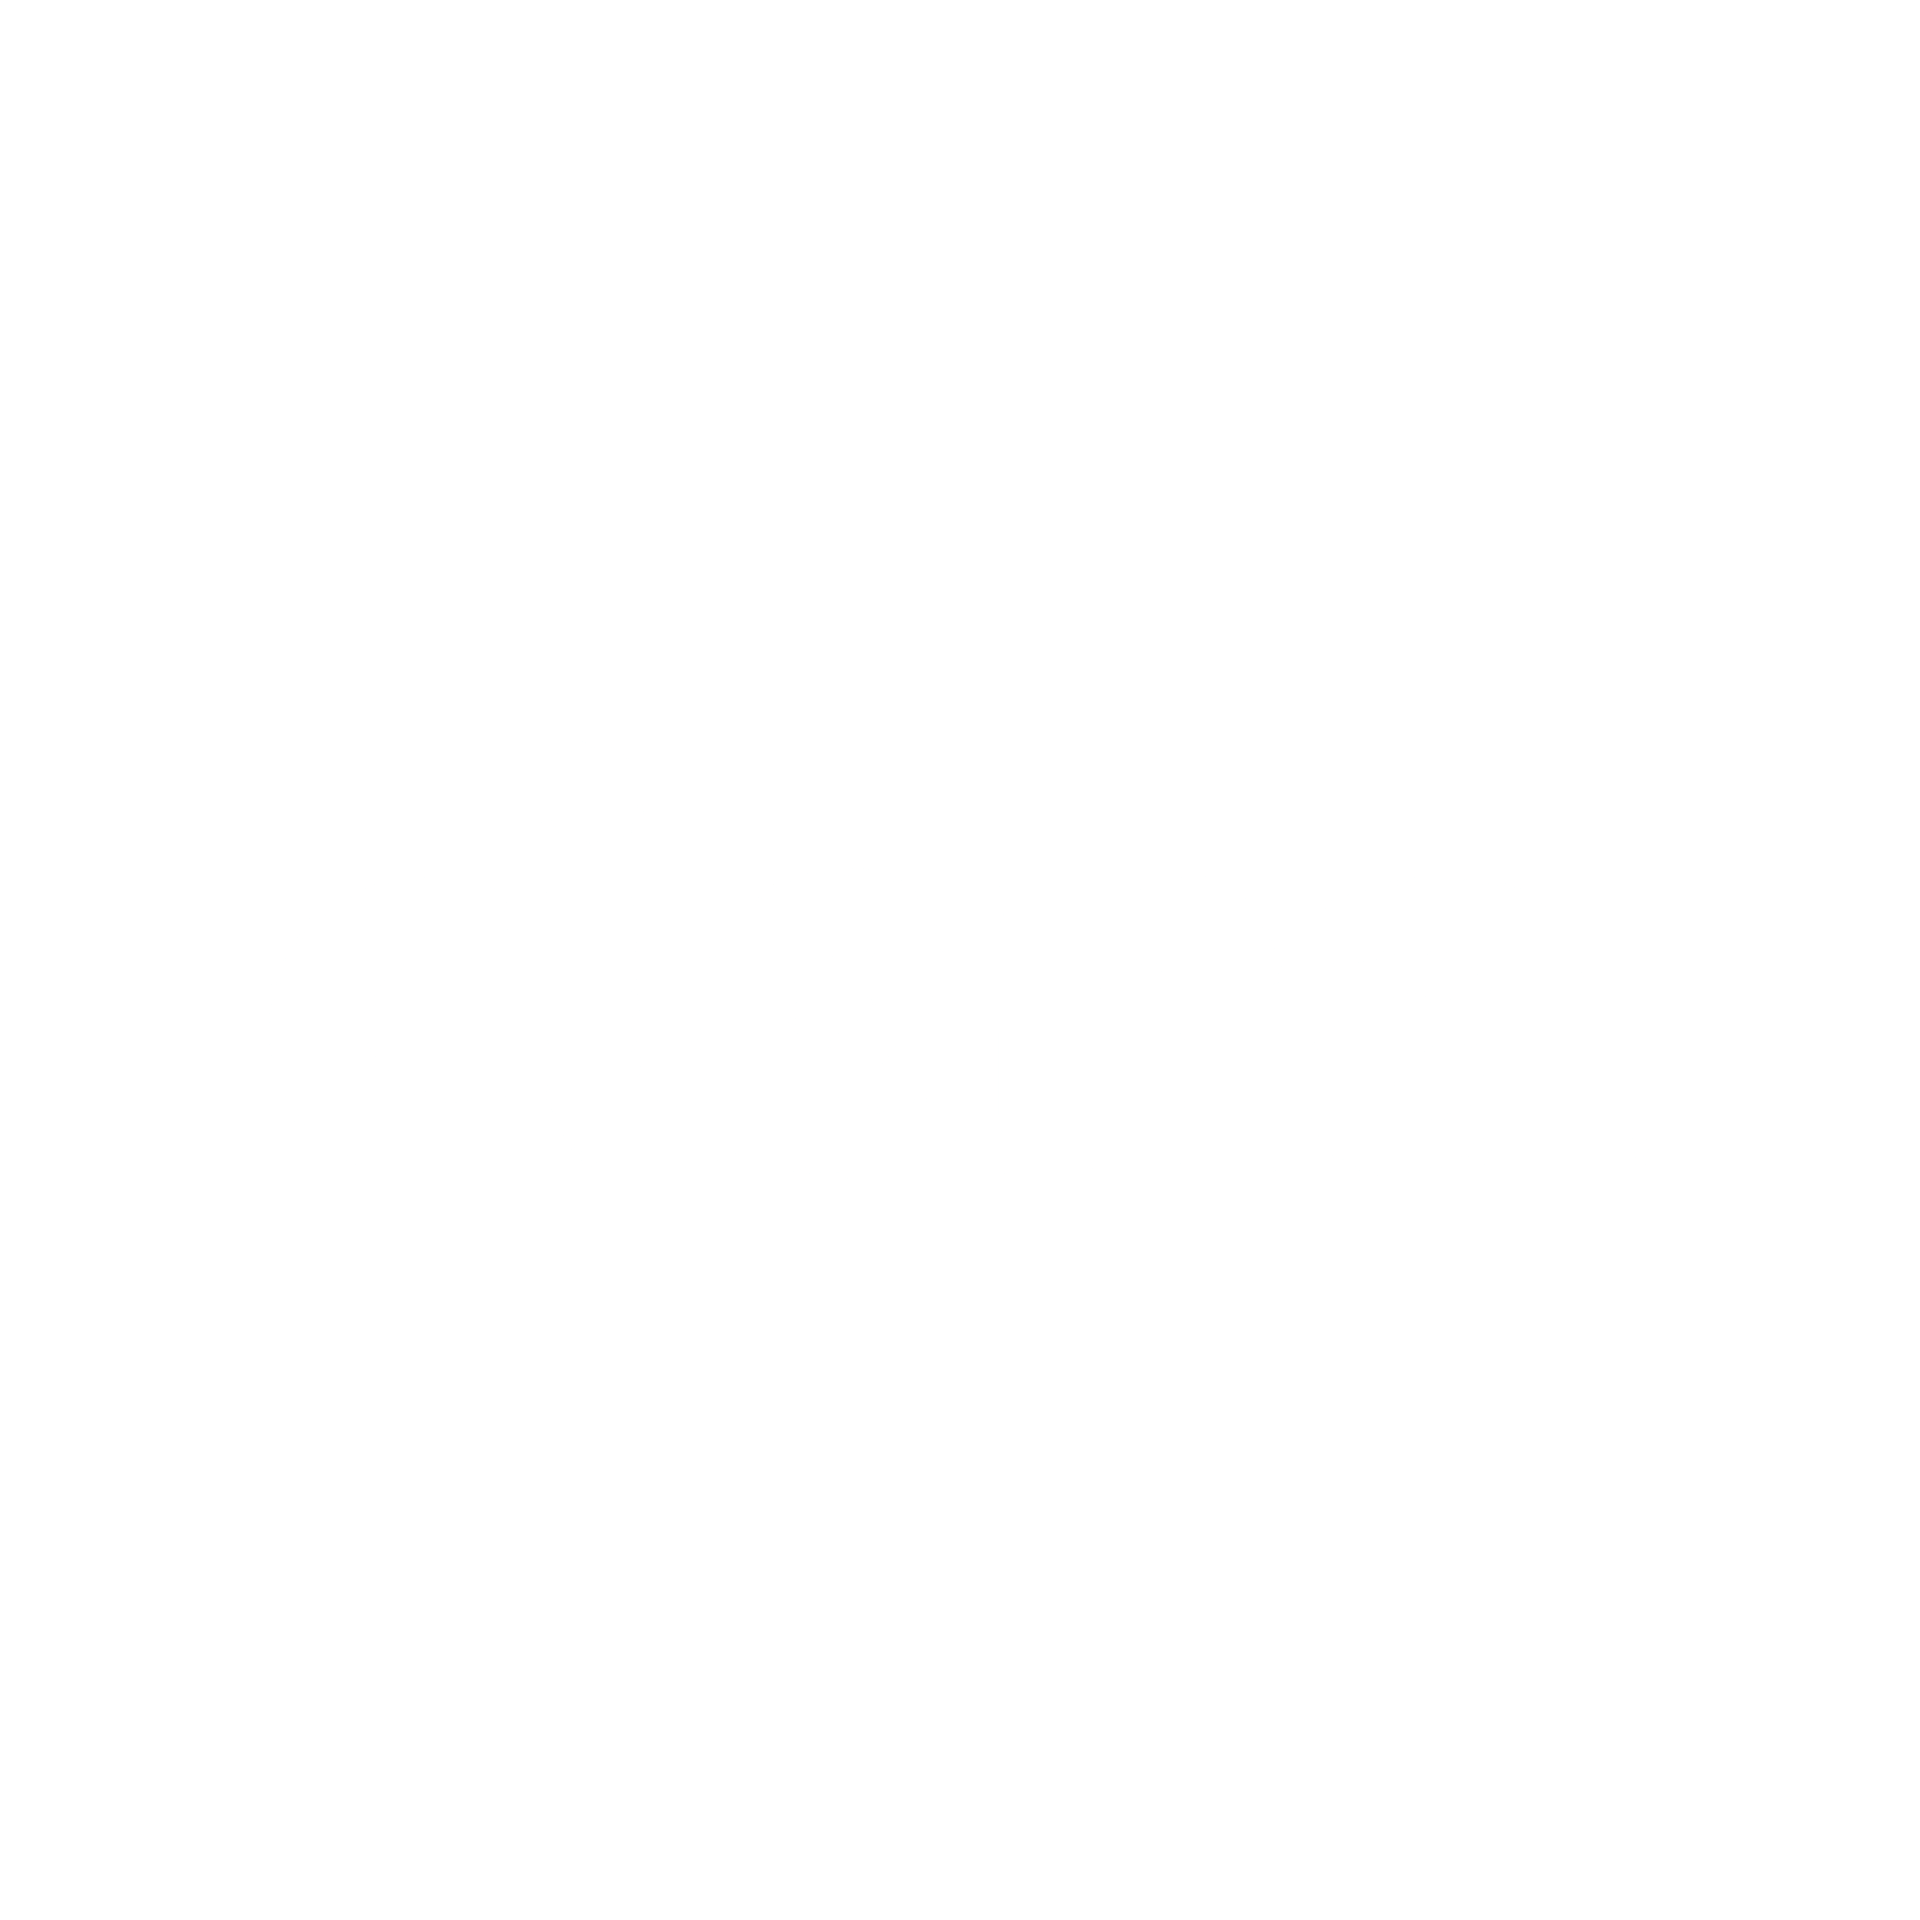 Ciena Logo